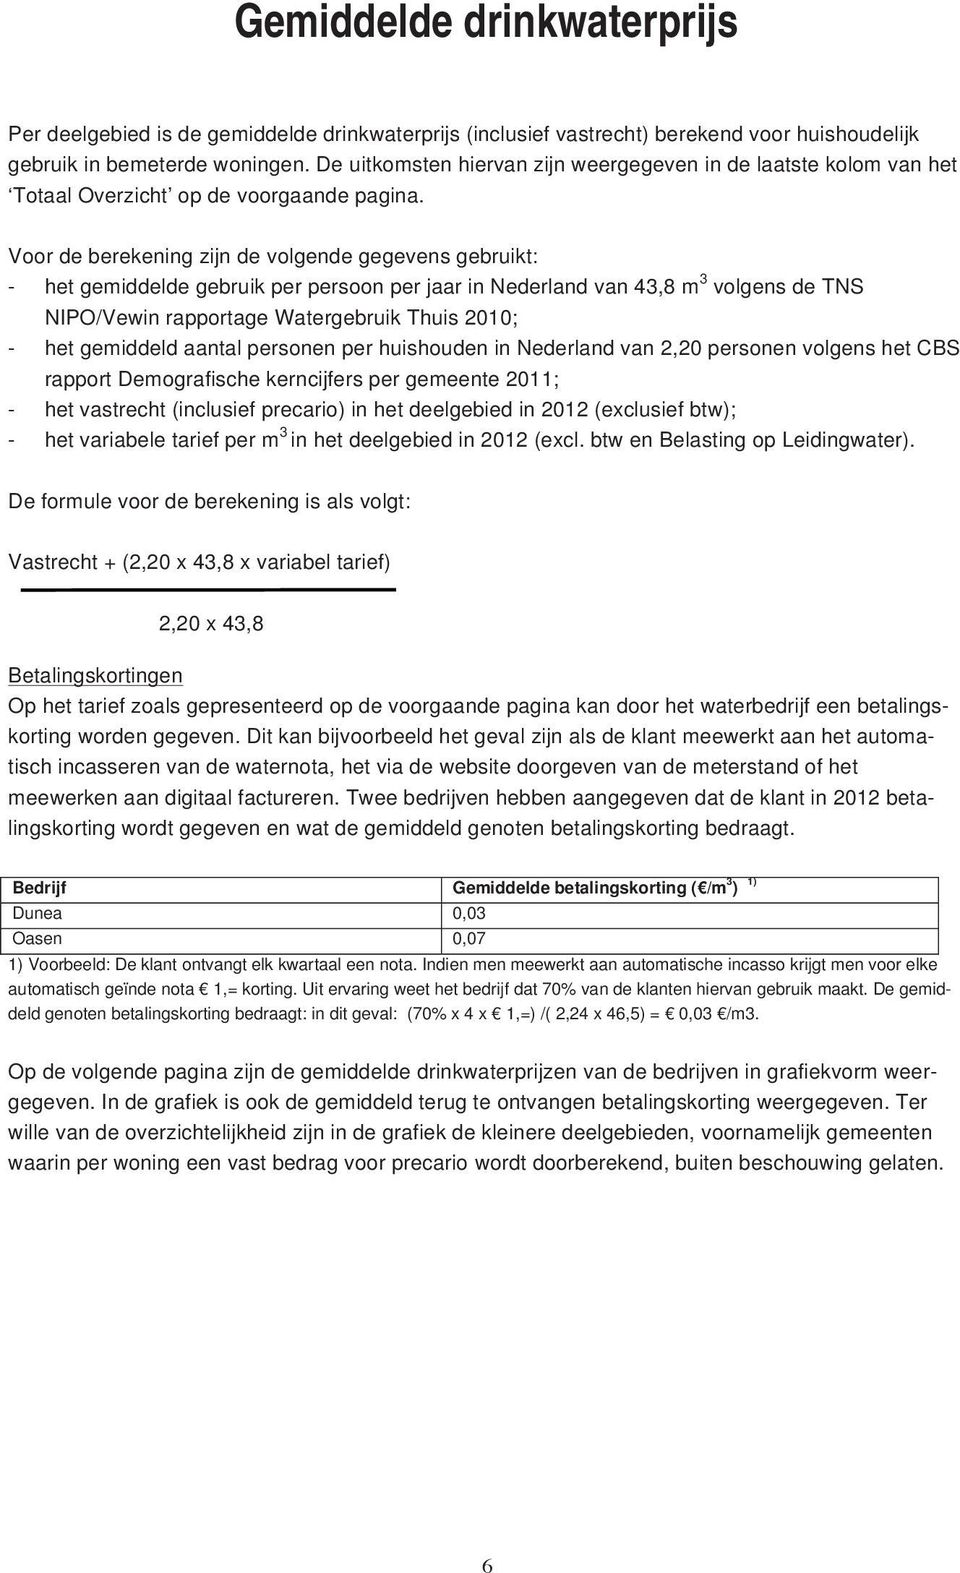 Voor de berekening zijn de volgende gegevens gebruikt: - het gemiddelde gebruik per persoon per jaar in Nederland van 43,8 m 3 volgens de TNS NIPO/Vewin rapportage Watergebruik Thuis 2010; - het